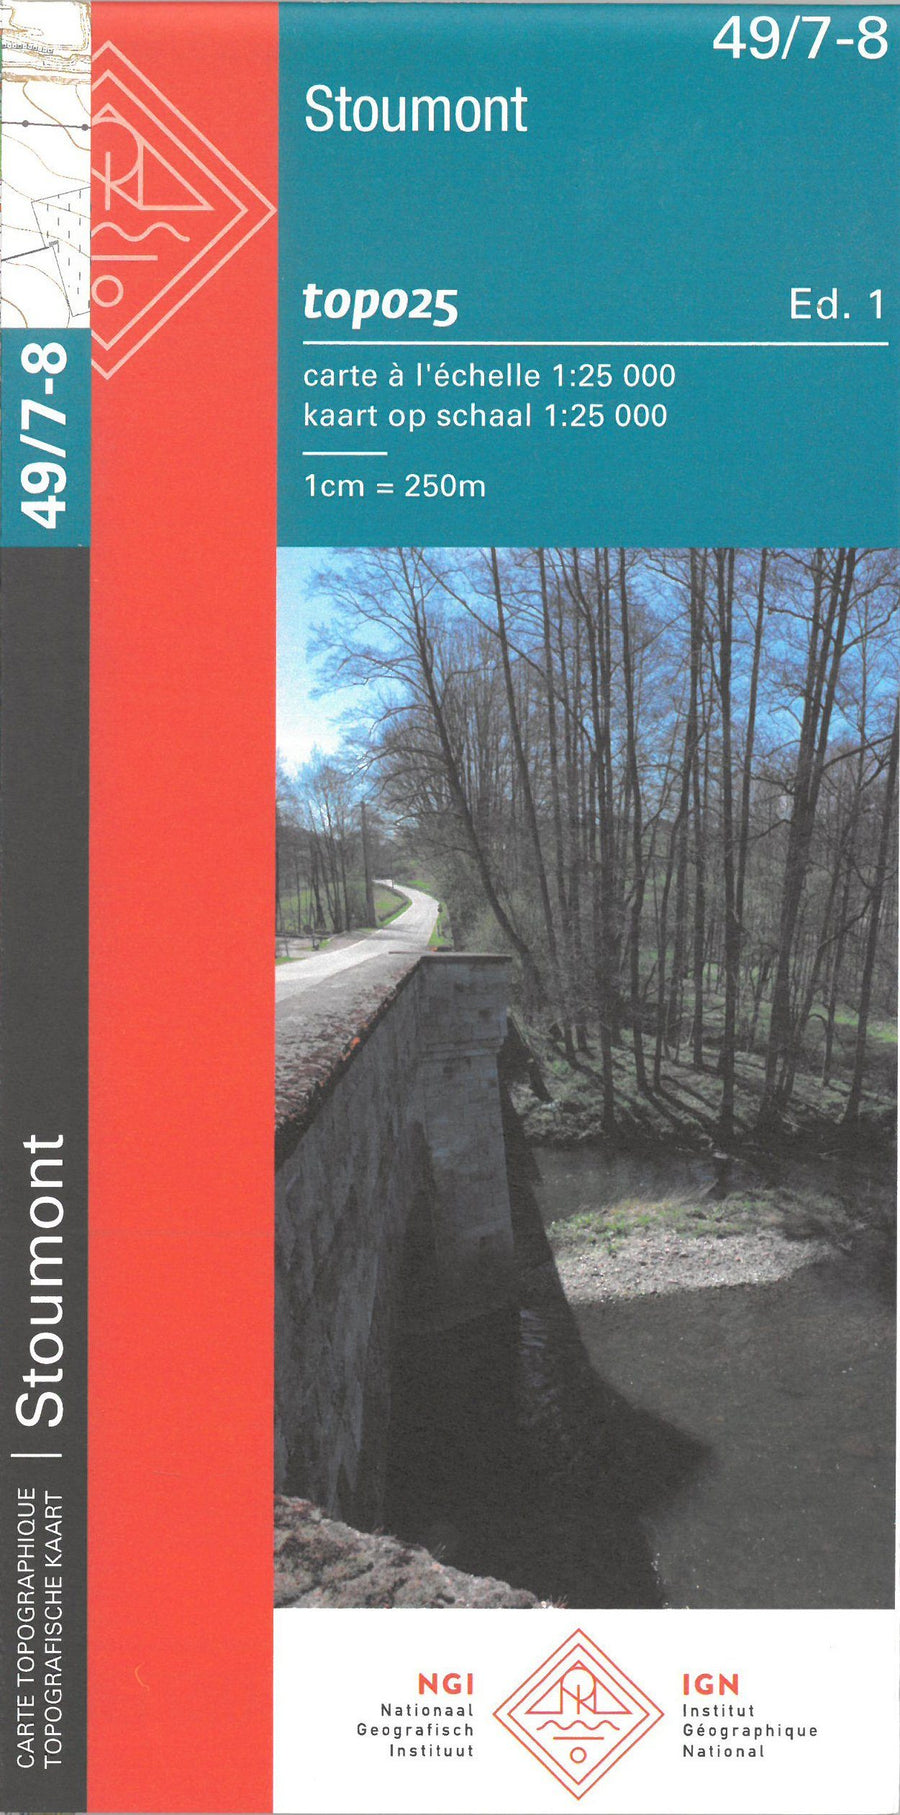 Carte topographique n° 49/7-8 - Stoumont (Belgique) | NGI topo 25 carte pliée IGN Belgique 